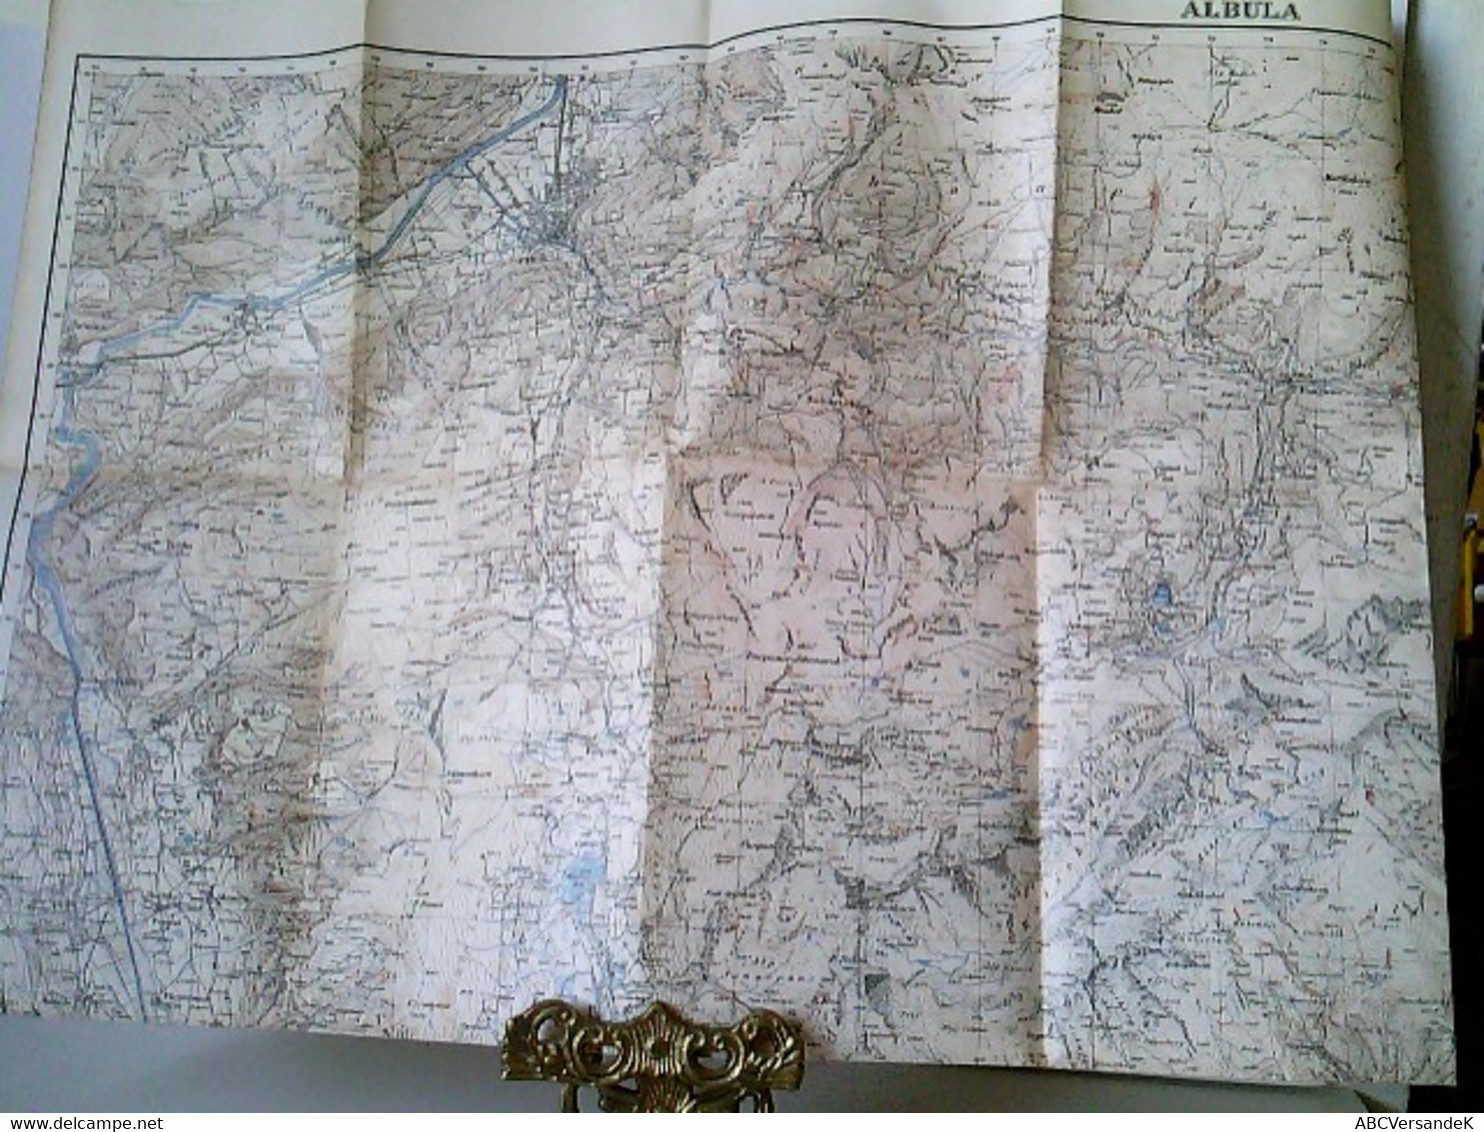 Topographischer Atlas Der Schweiz. Albula. Maßstab 1 : 50 000. Gefalzt - Zwitserland